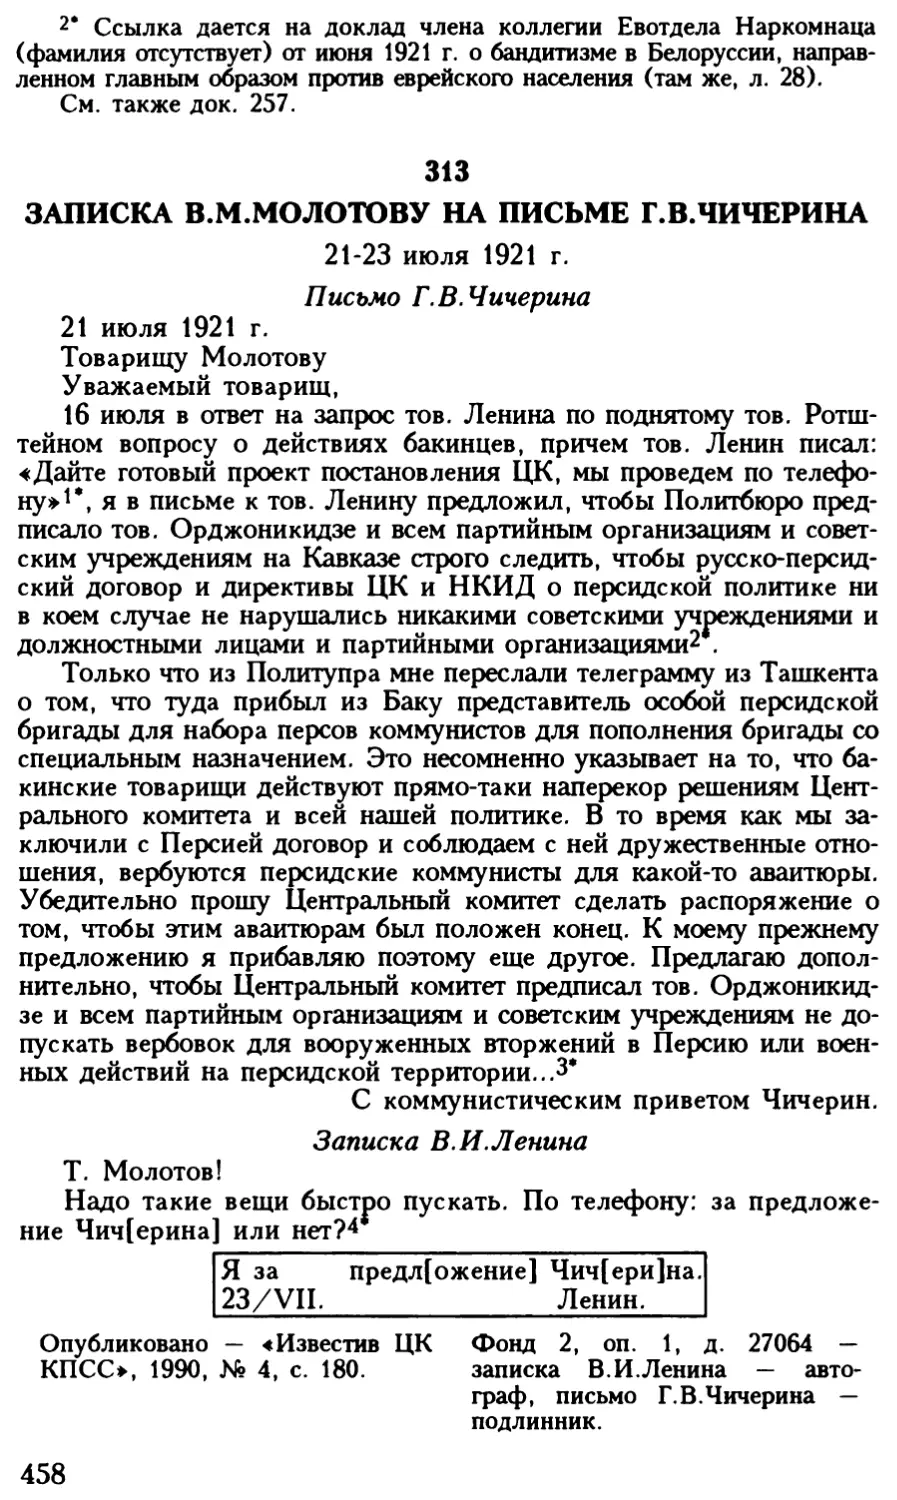 313. Записка В.М.Молотову на письме Г.В.Чичерина. 21—23 июля 1921 г